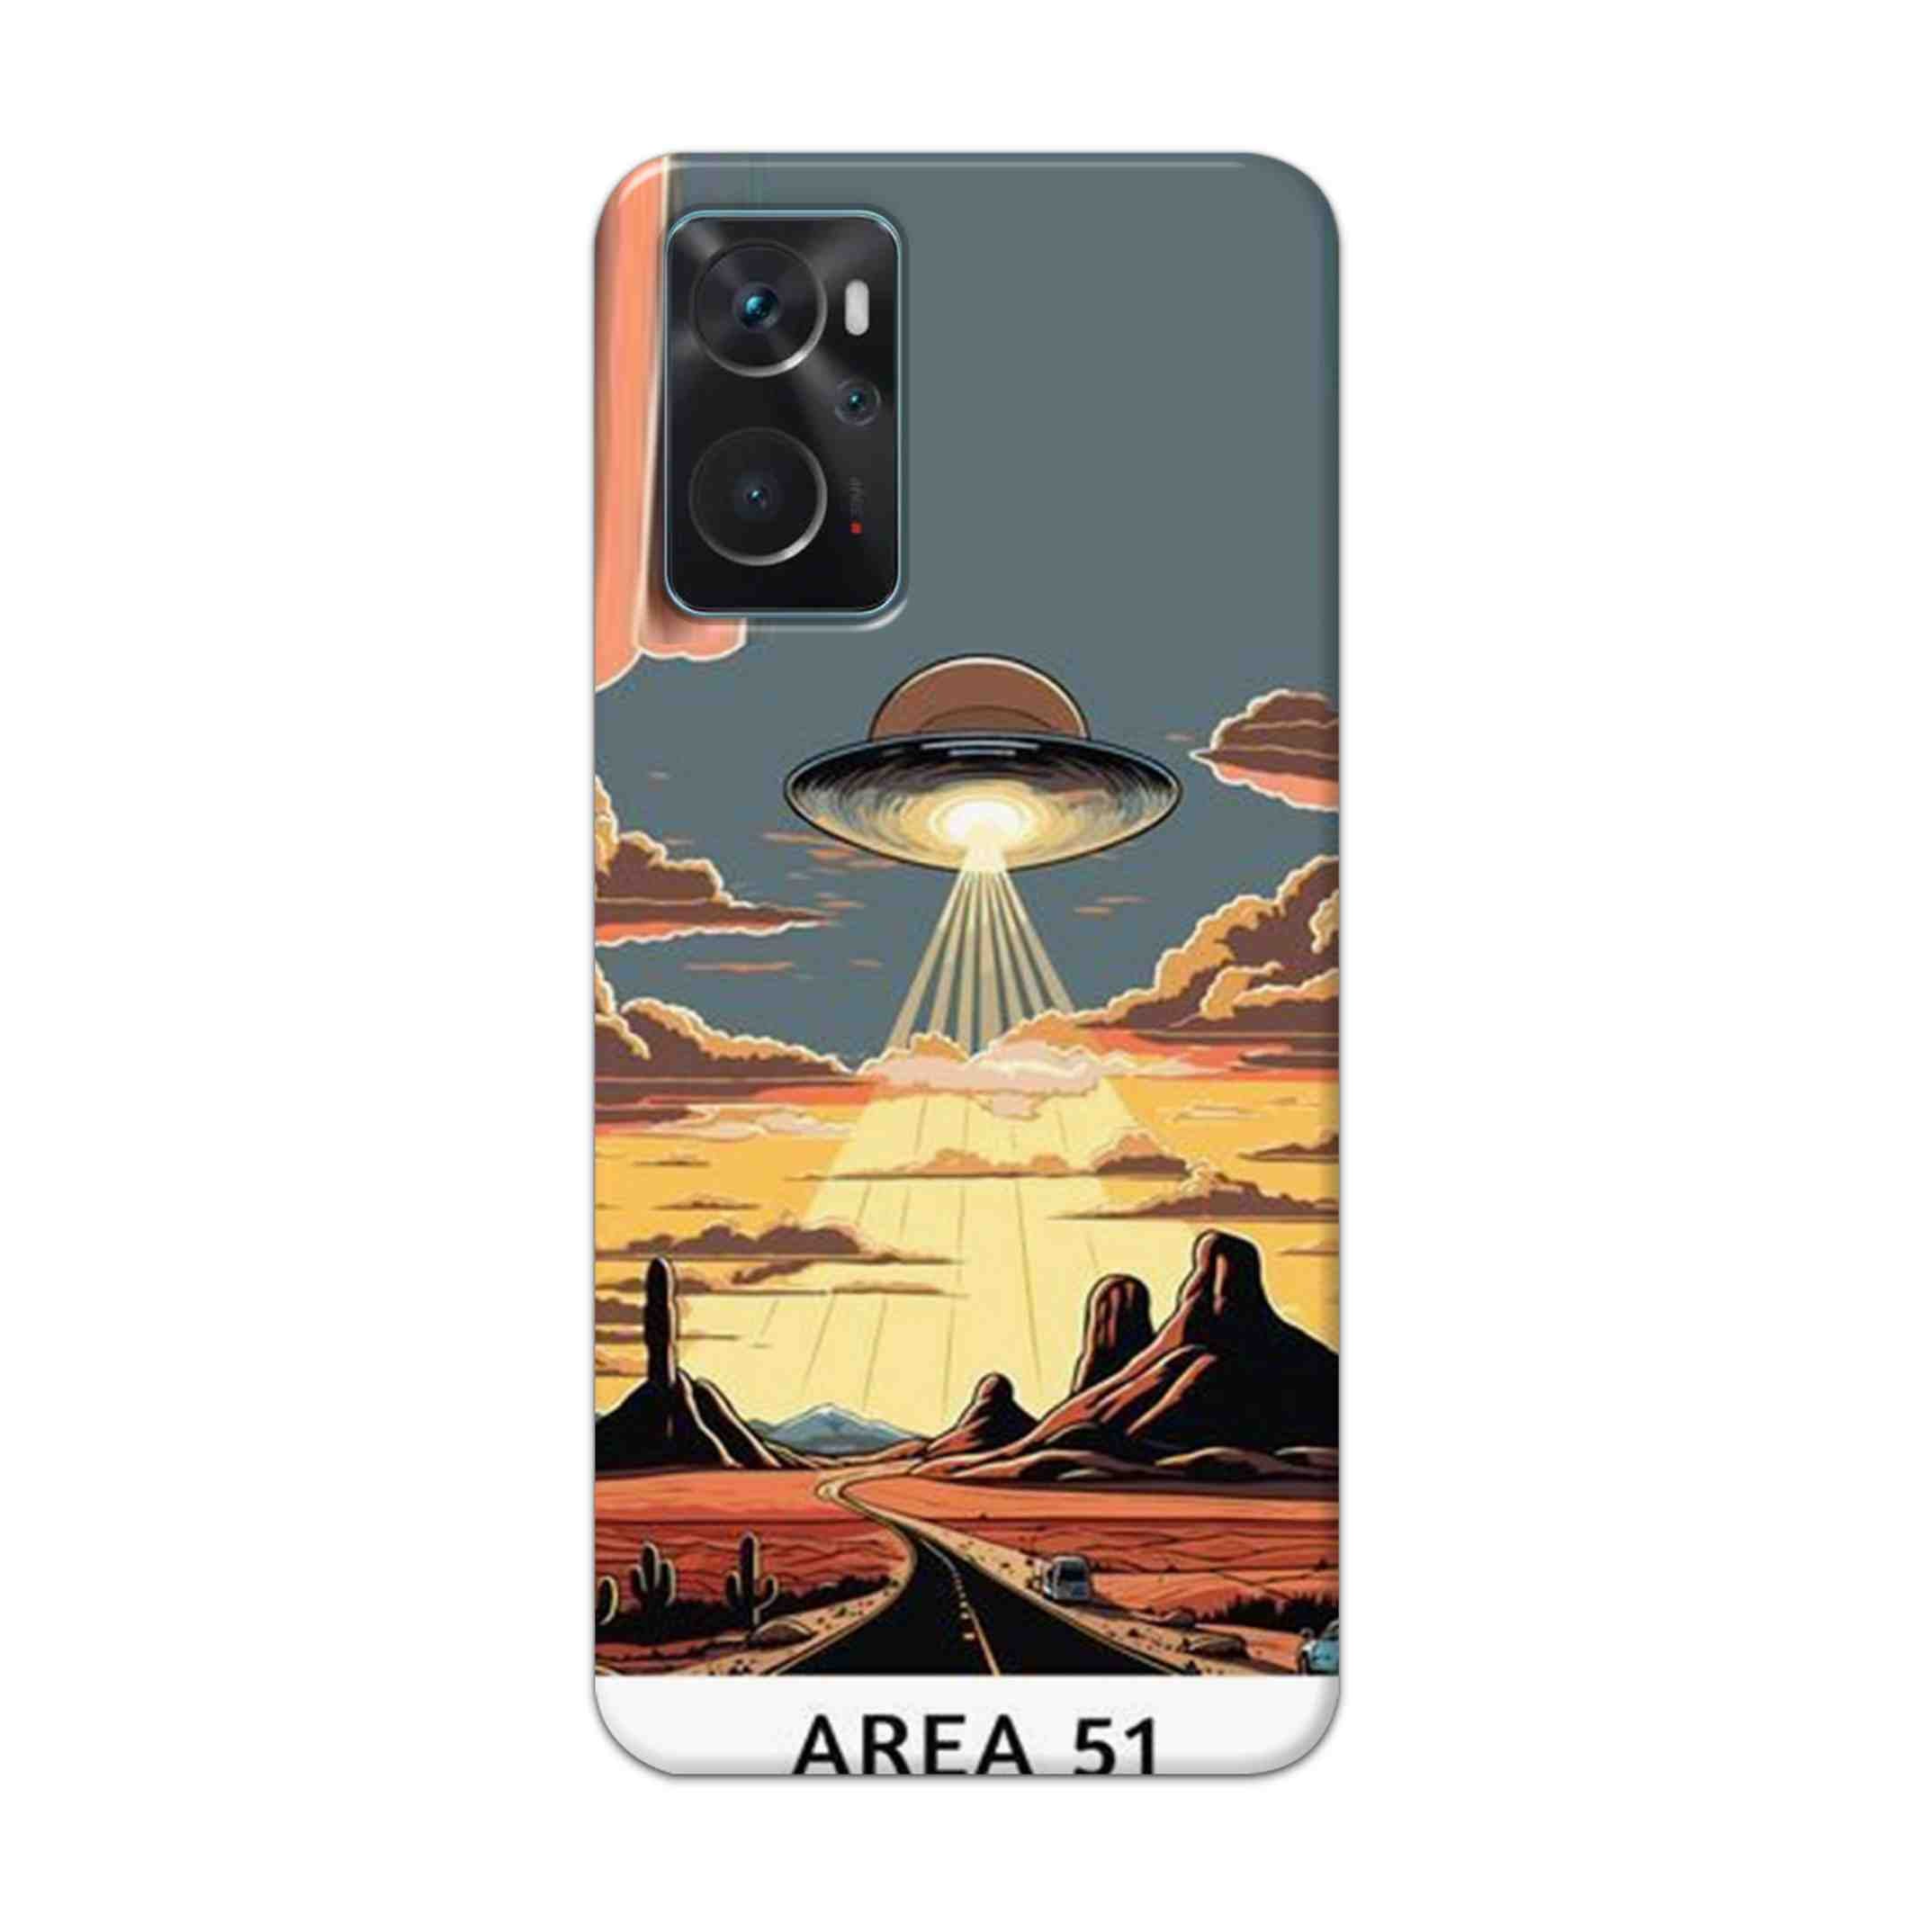 Buy Area 51 Hard Back Mobile Phone Case Cover For Oppo K10 Online